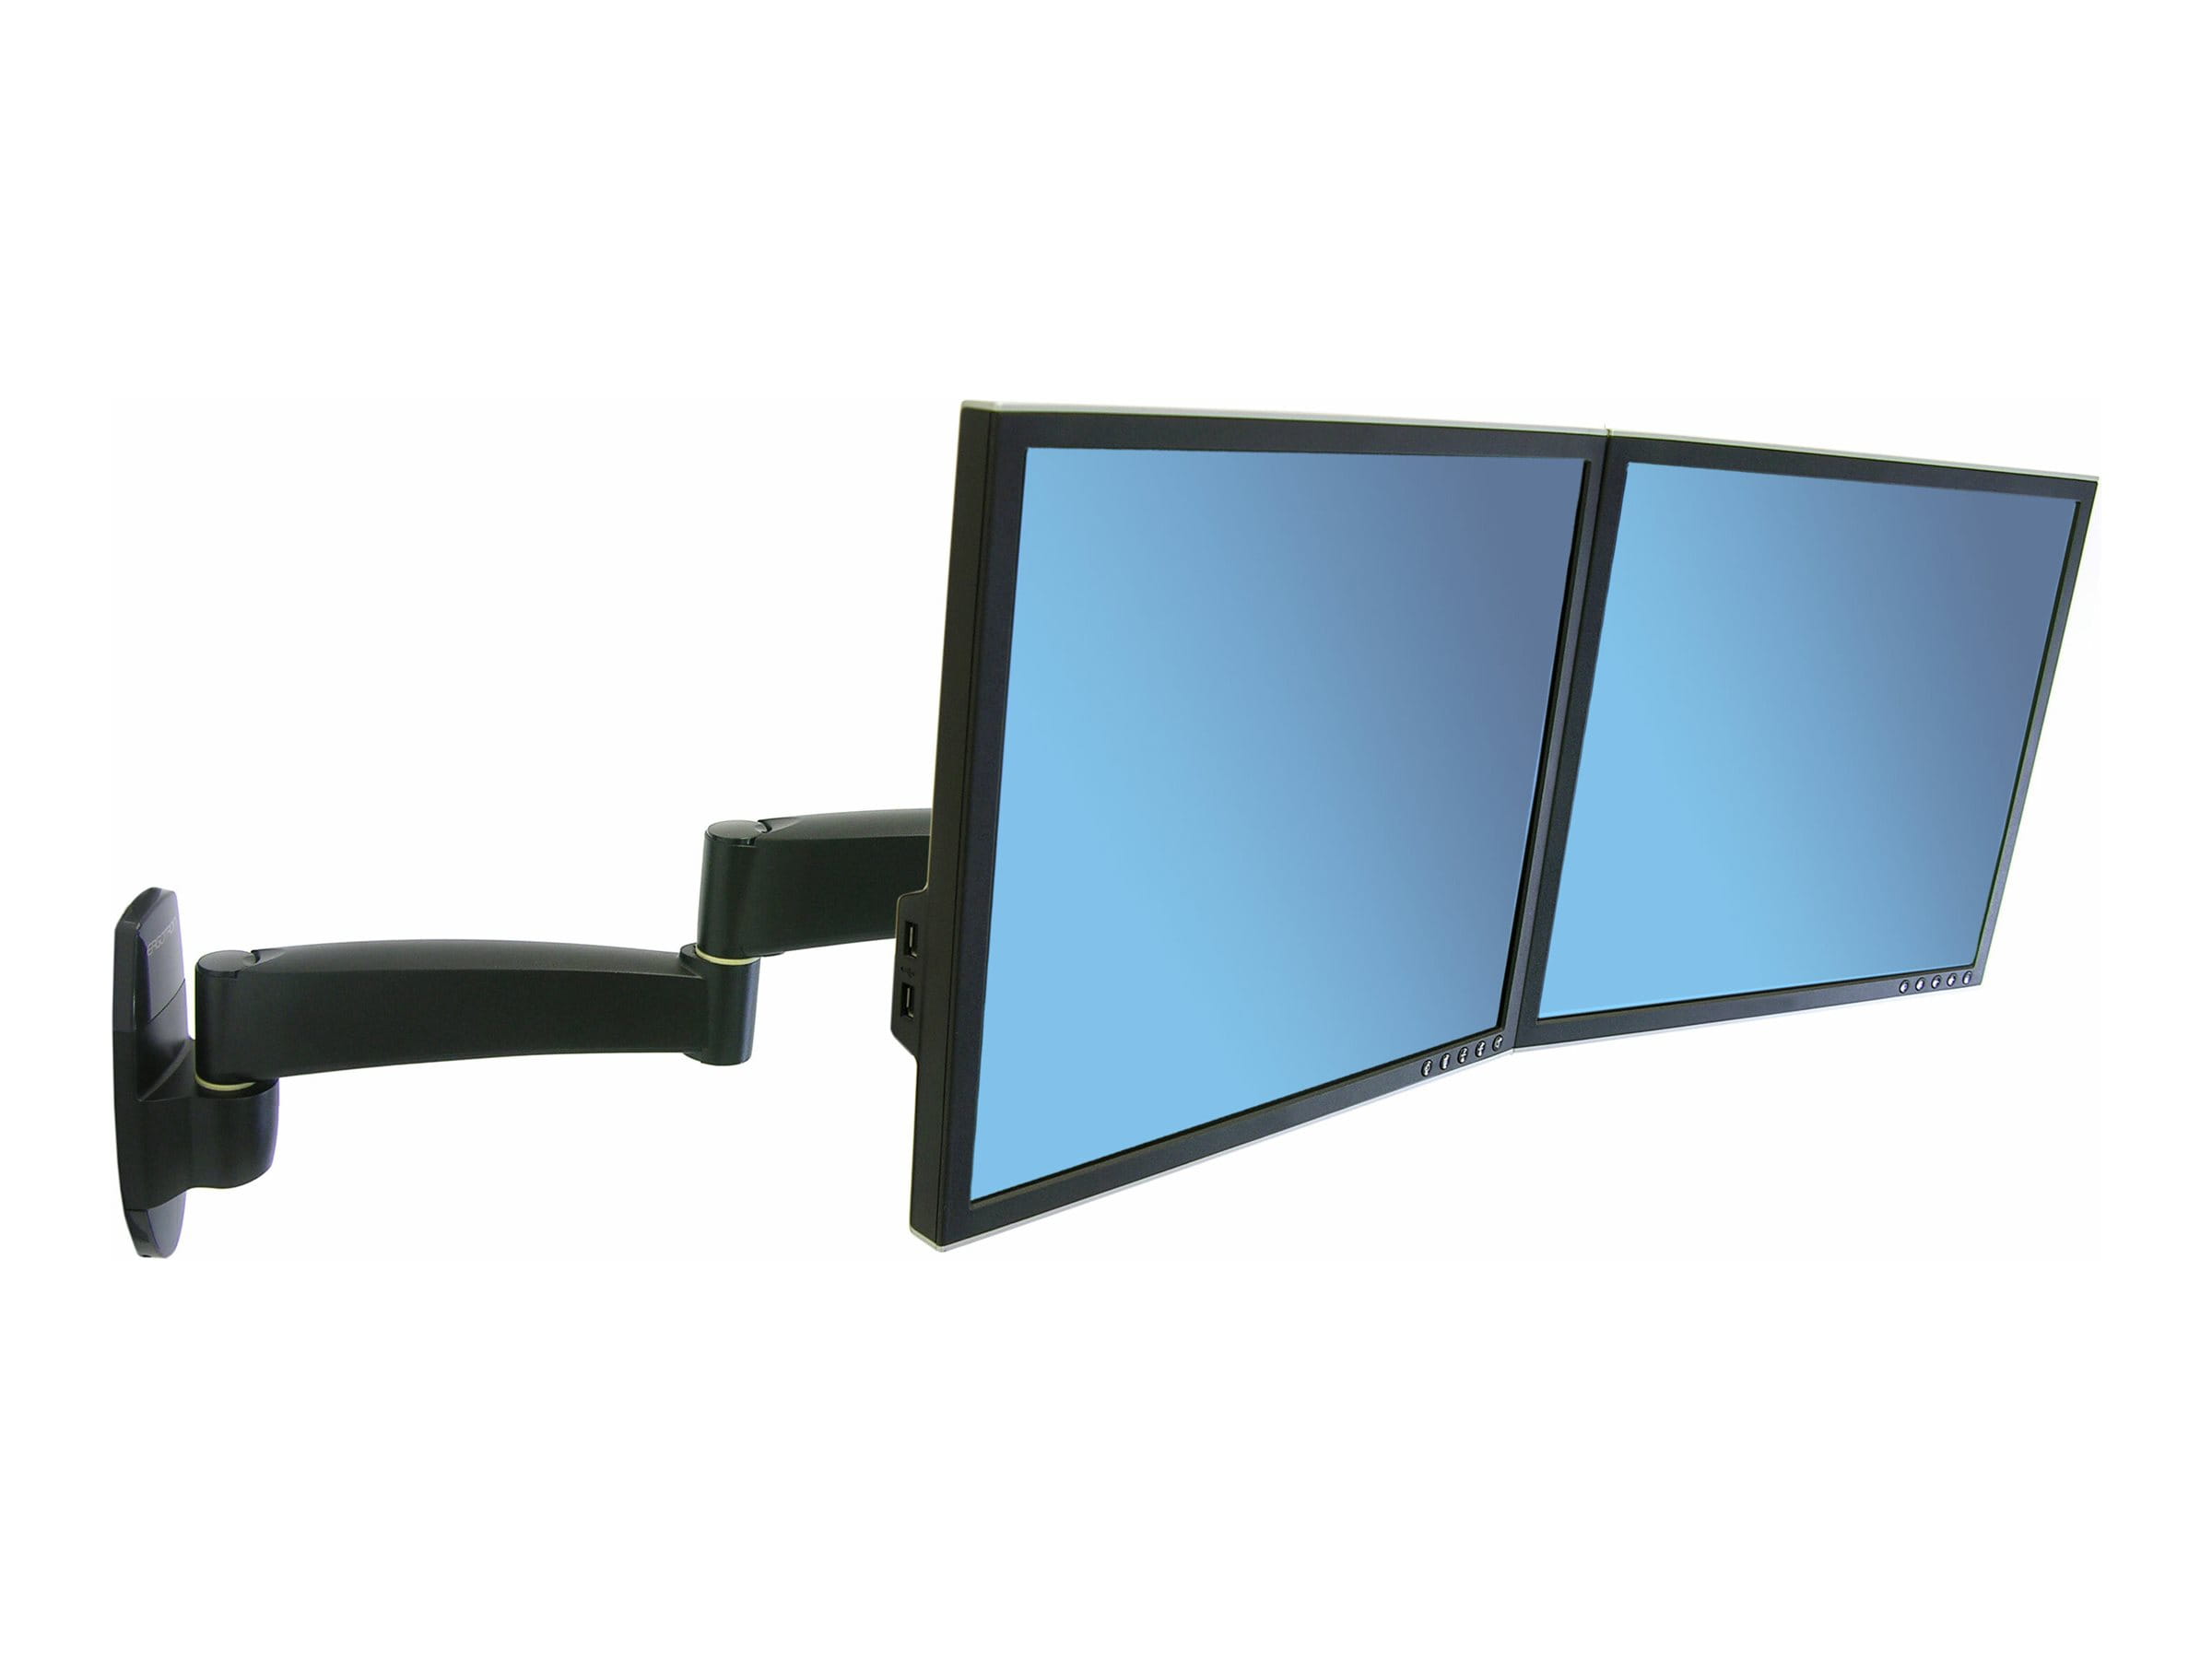 Ergotron 200 Series - Befestigungskit (Wandbefestigung, Doppelgelenkarm, Querstange, 2 VESA-Adapter, 2 Aufsätze) - einstellbarer Arm - für 2 LCD-Displays - Stahl - Schwarz - Bildschirmgröße: bis zu 55,9 cm (bis zu 22 Zoll)